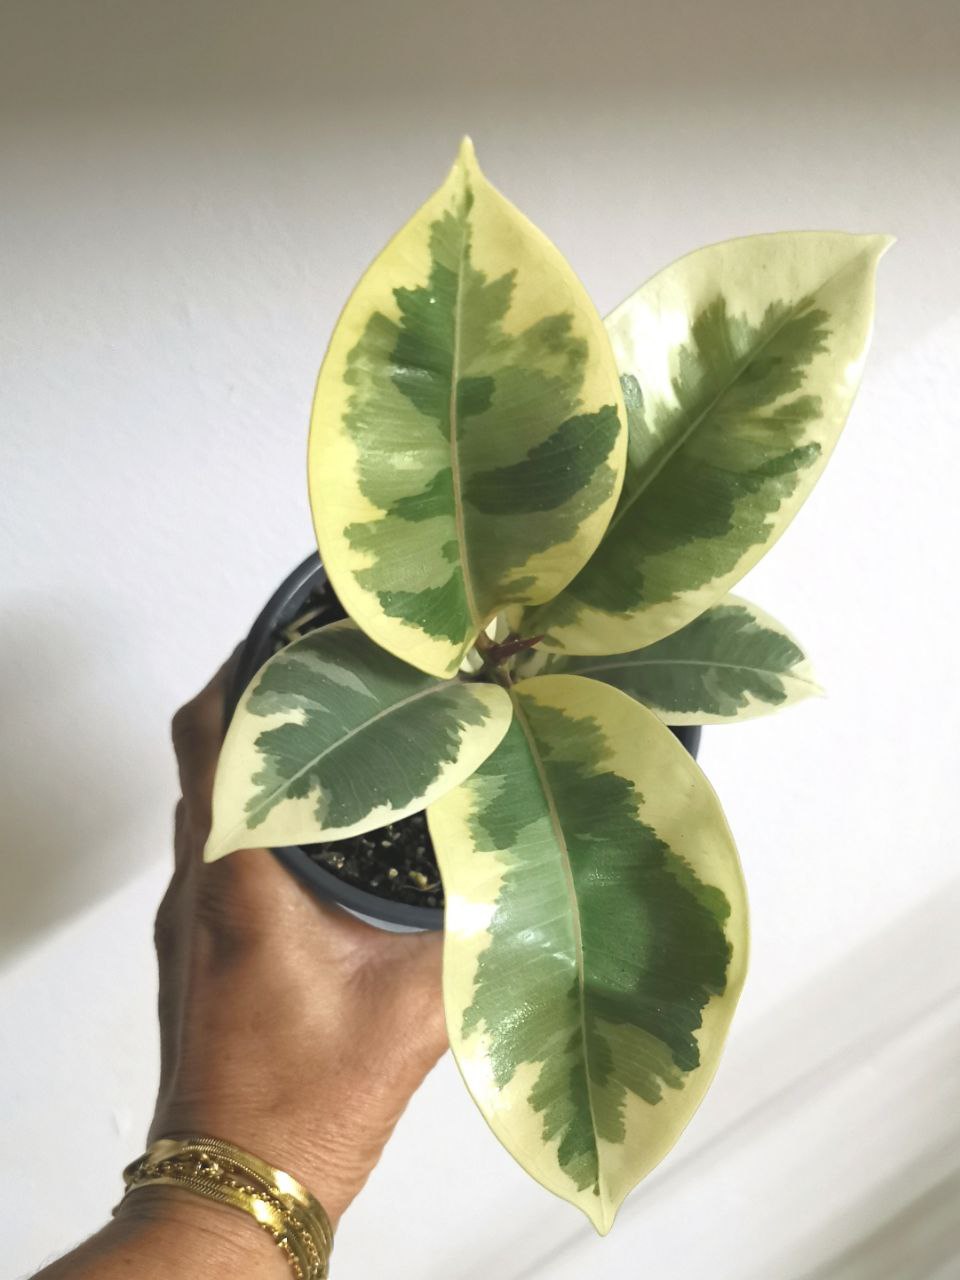 Ficus Elastica- Rubber plant